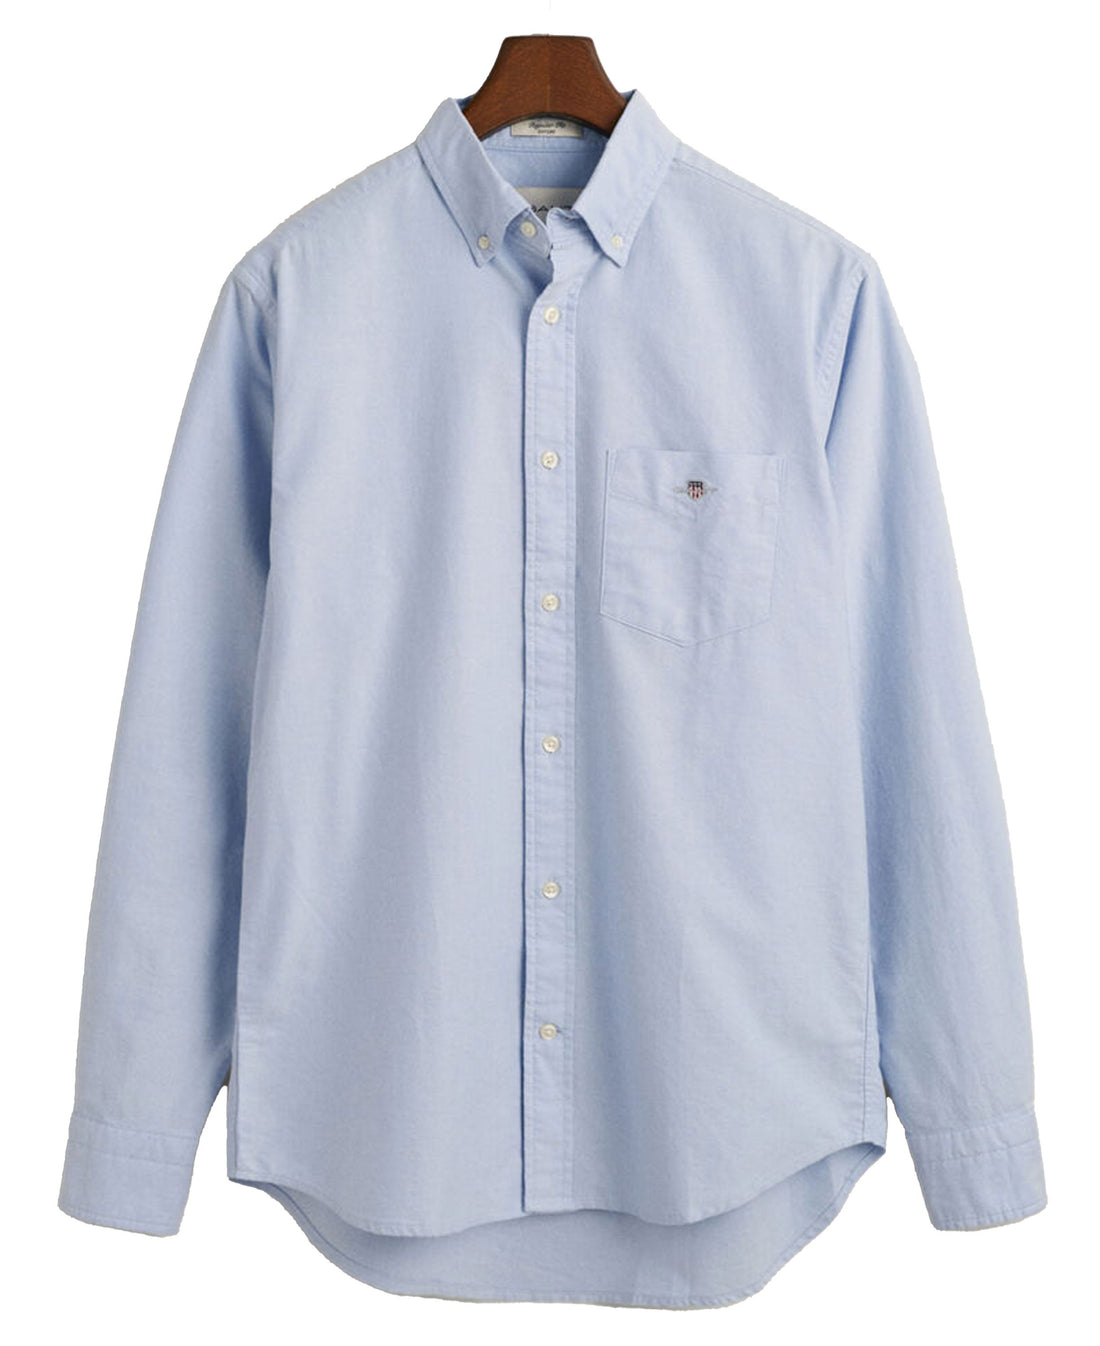 Regular Fit Oxford Shirt - Light Blue